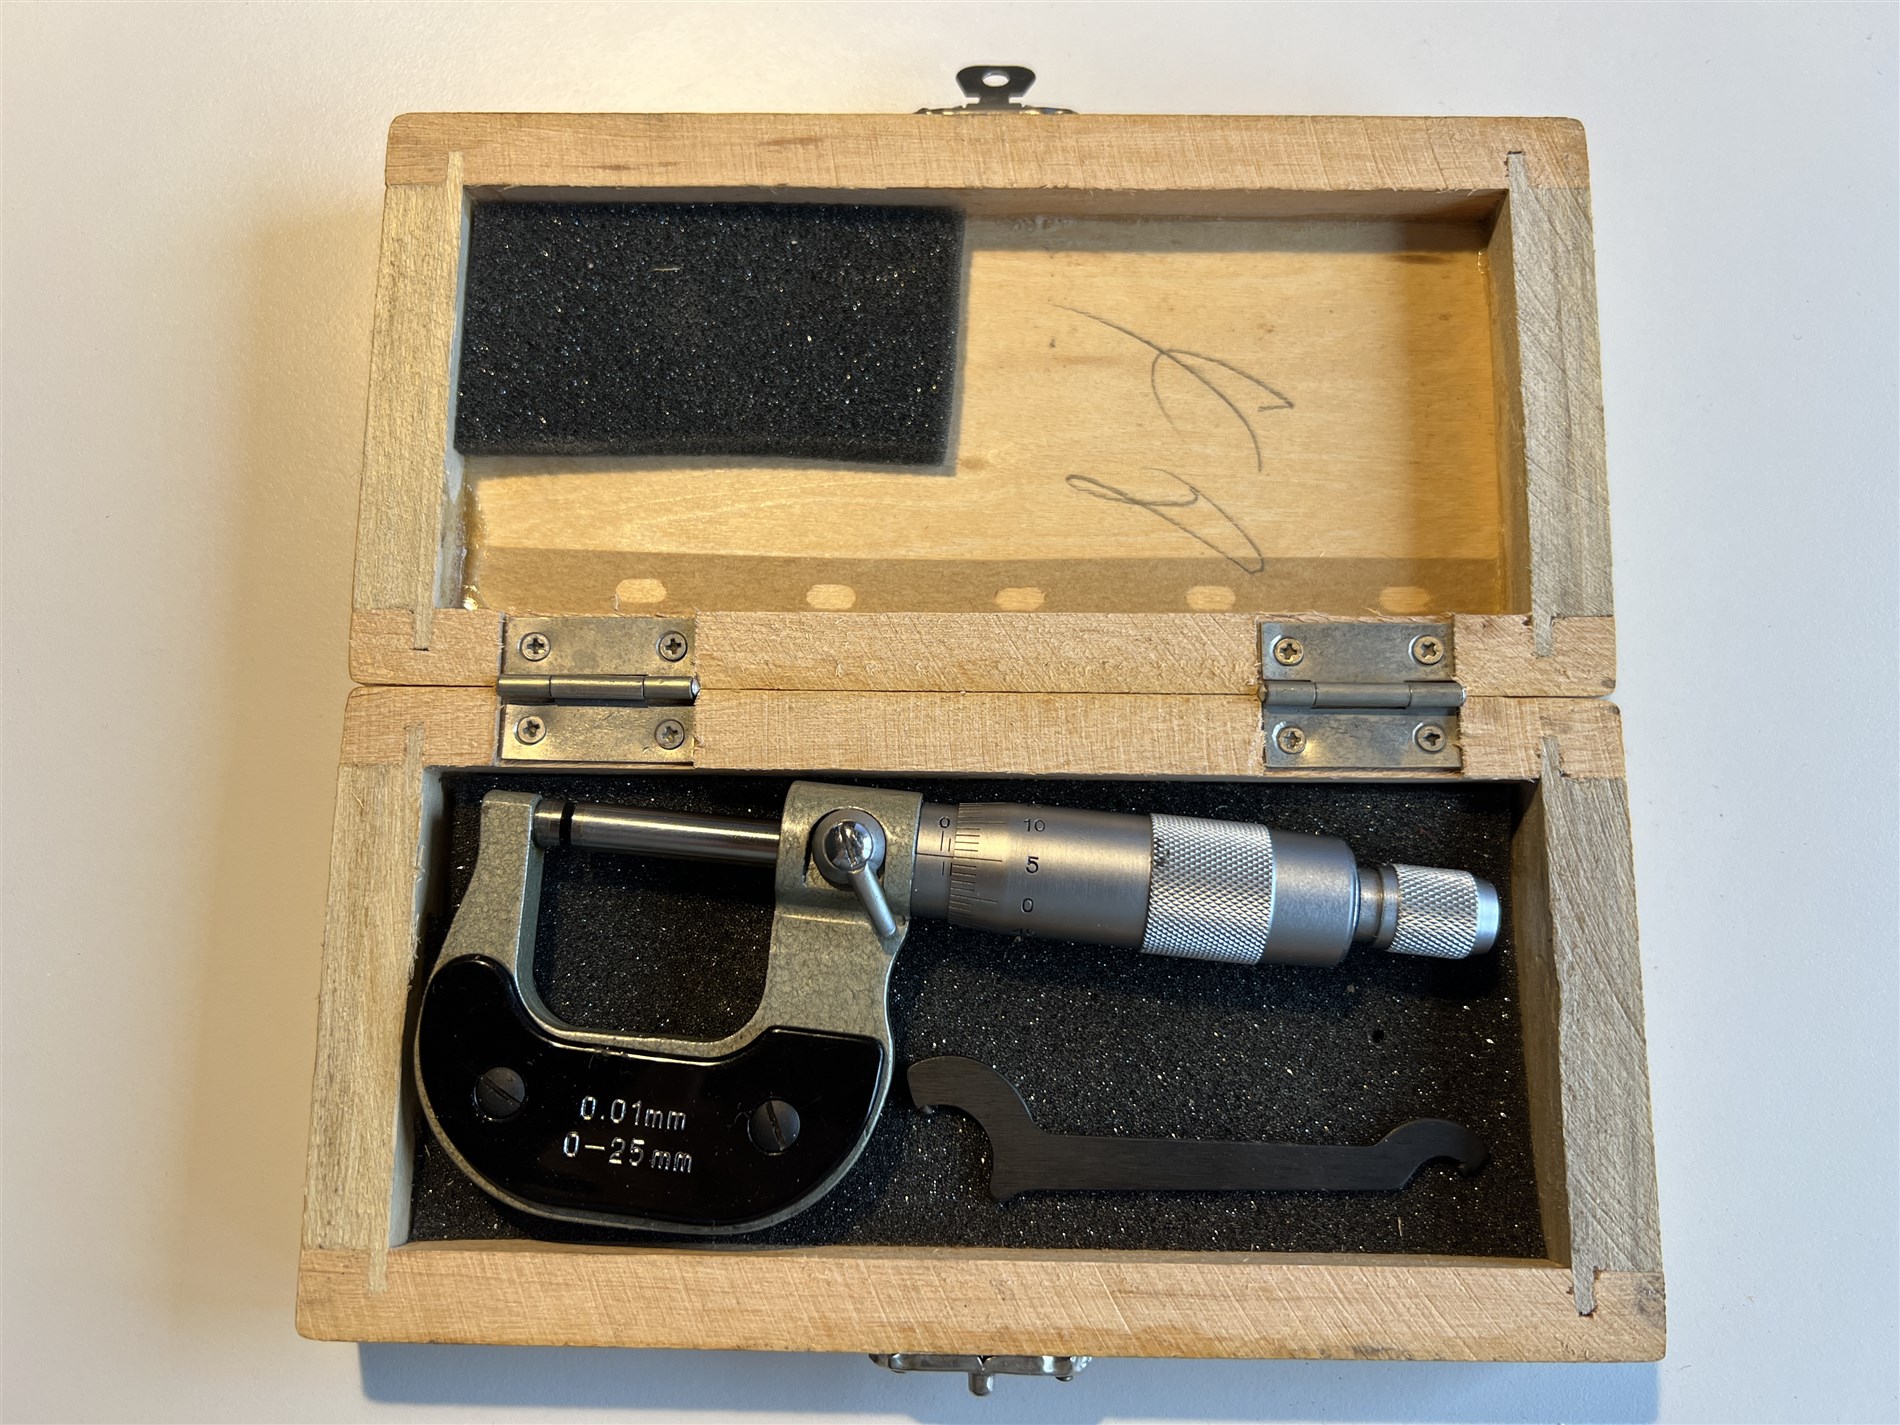 Bügelmessschraube Micrometer 0-25mm